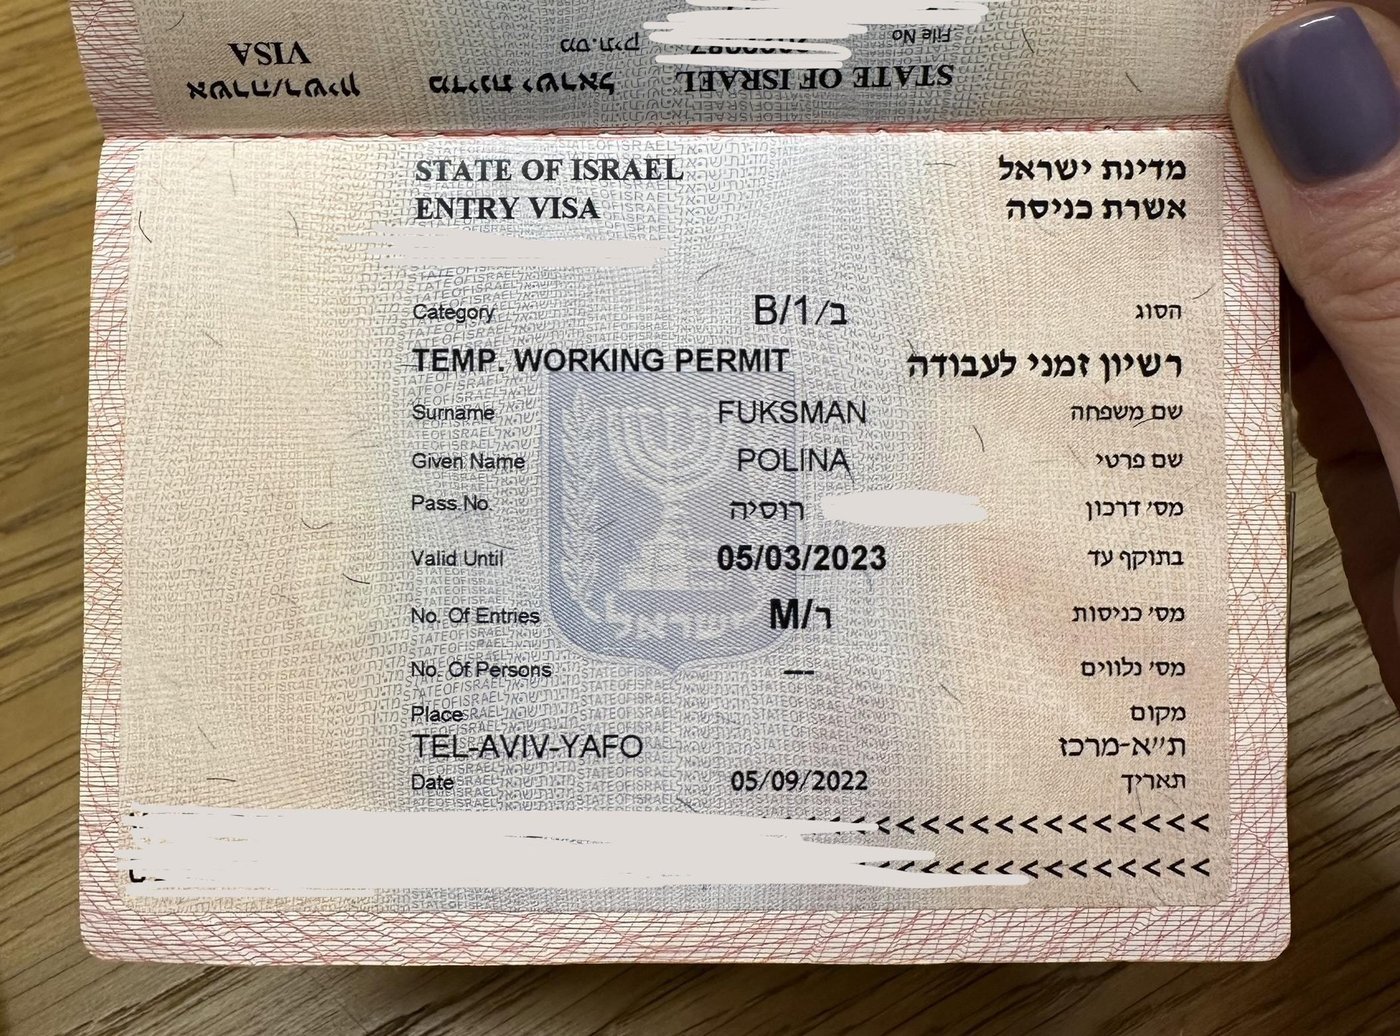 отдельная Entry Visa для пересечения границы